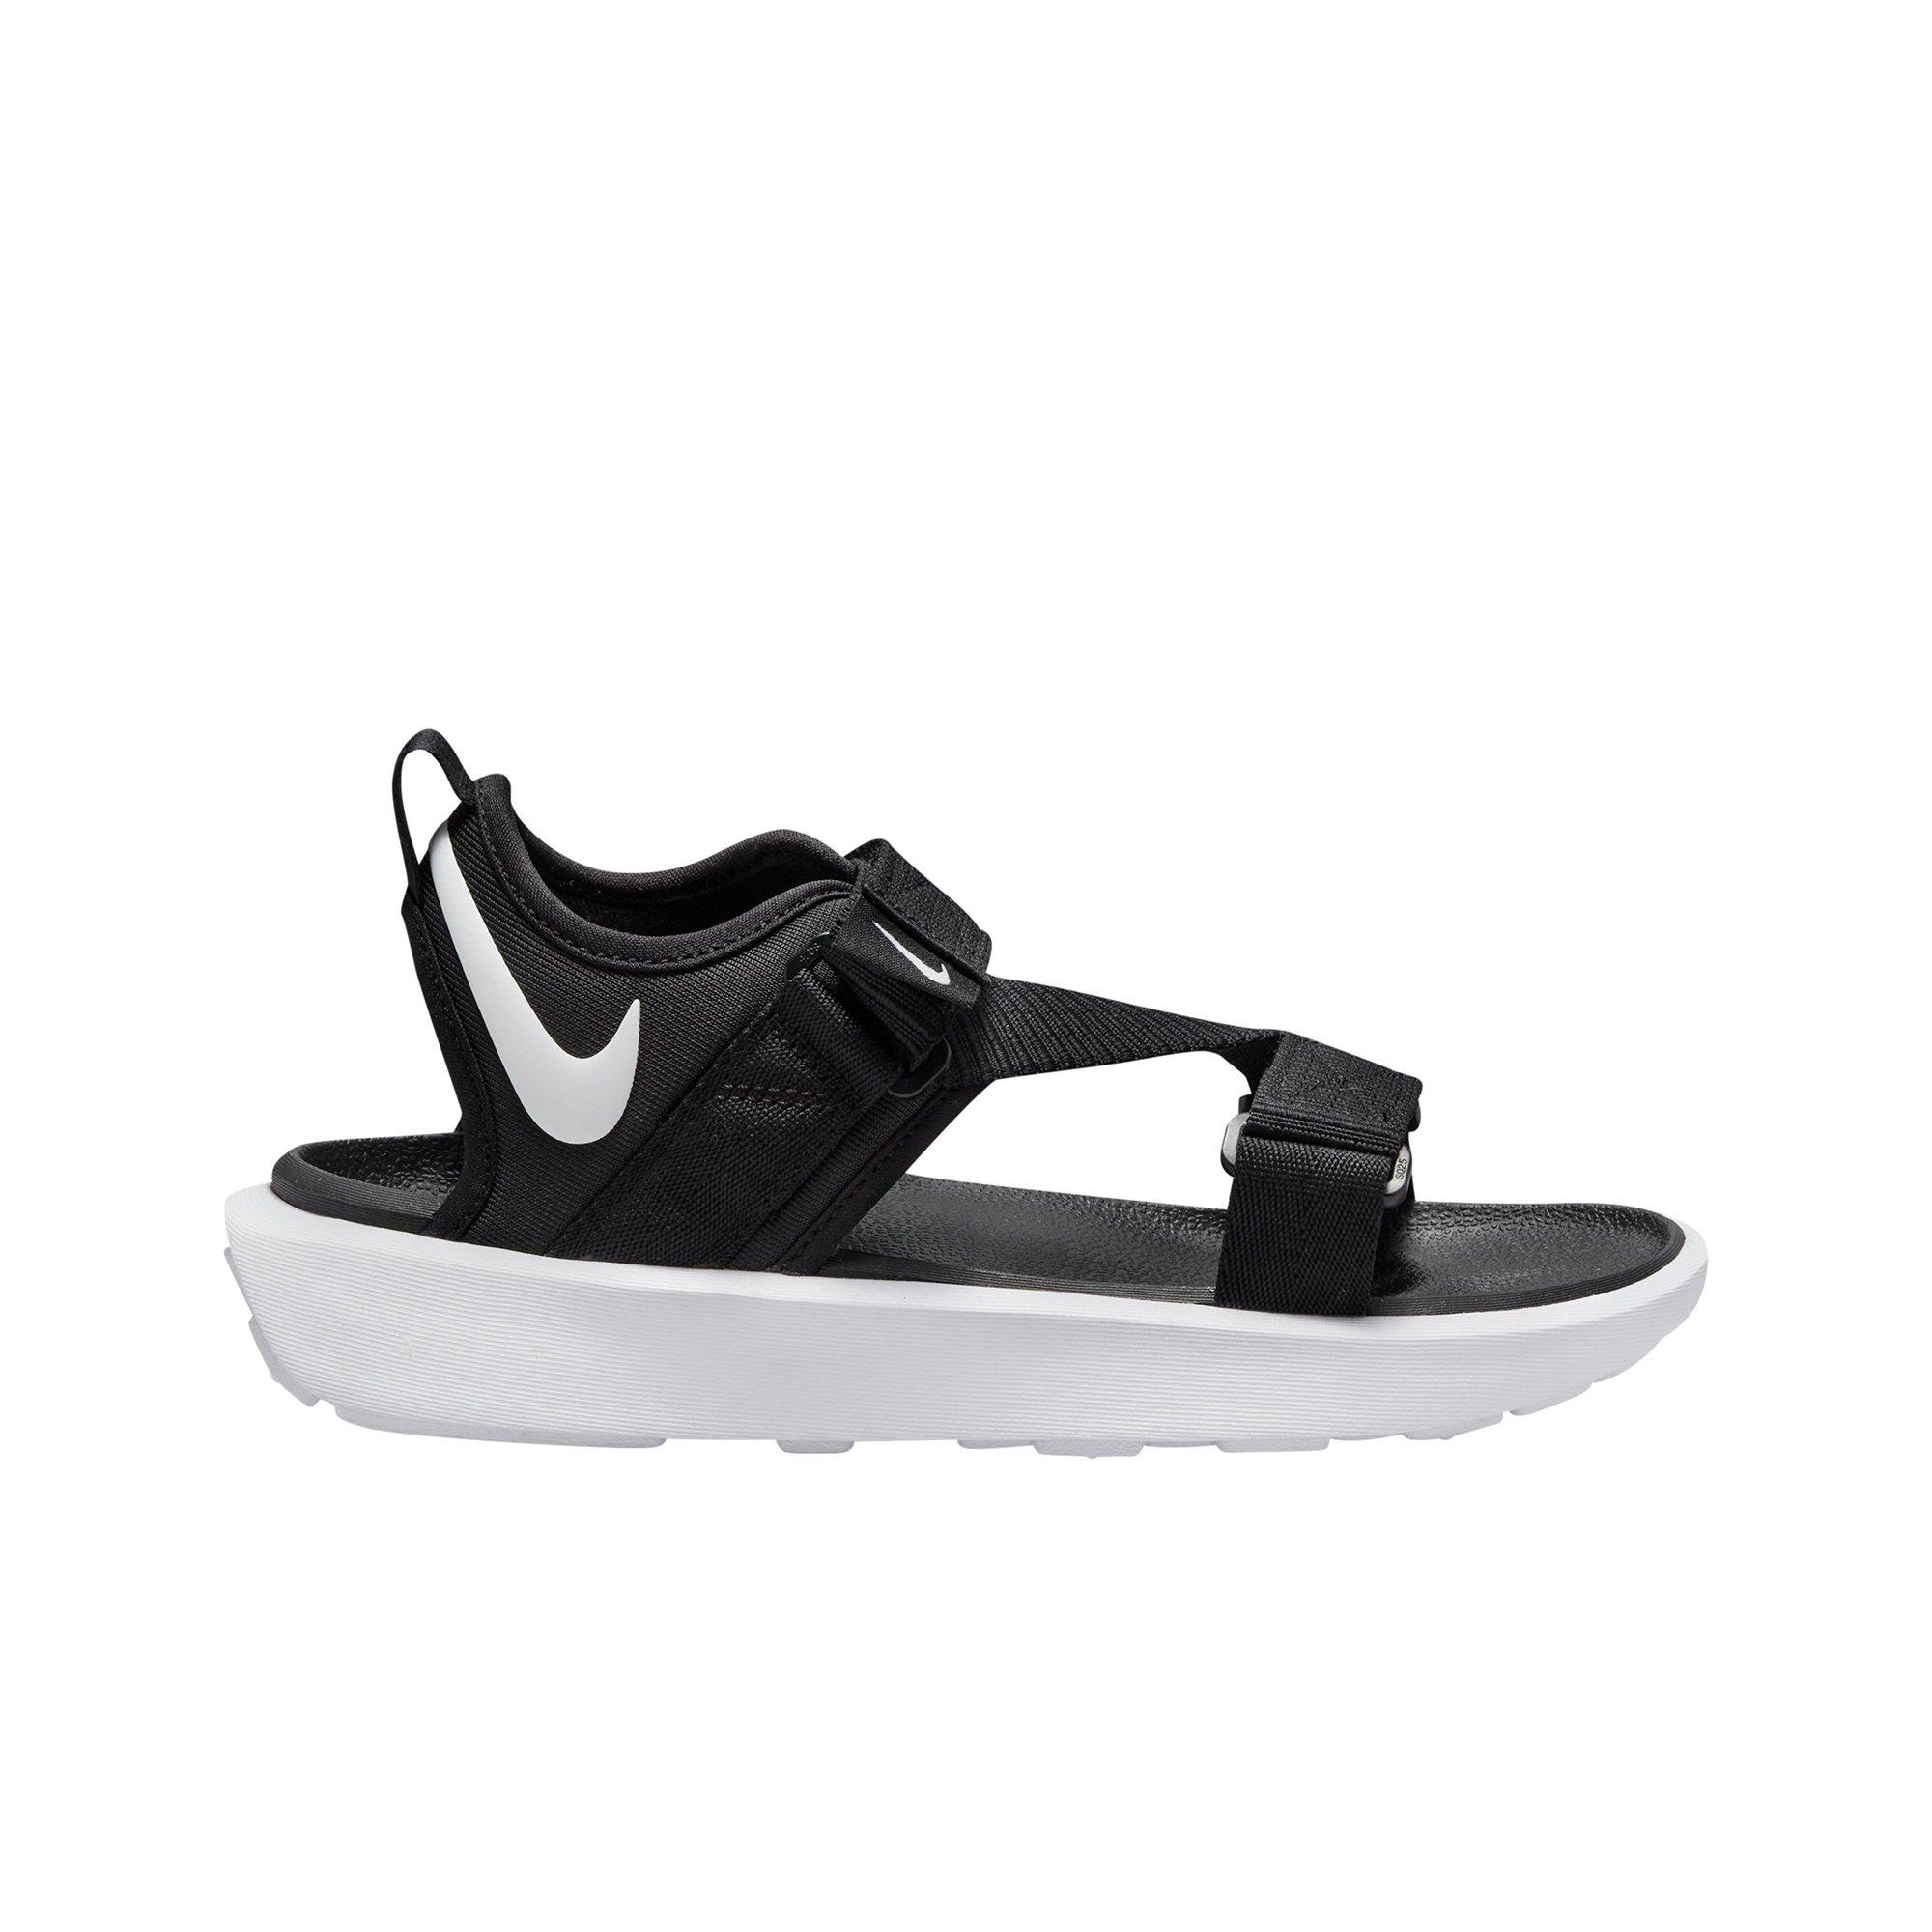 local Plano Dificil Nike Vista "Black/White" Women's Sandal